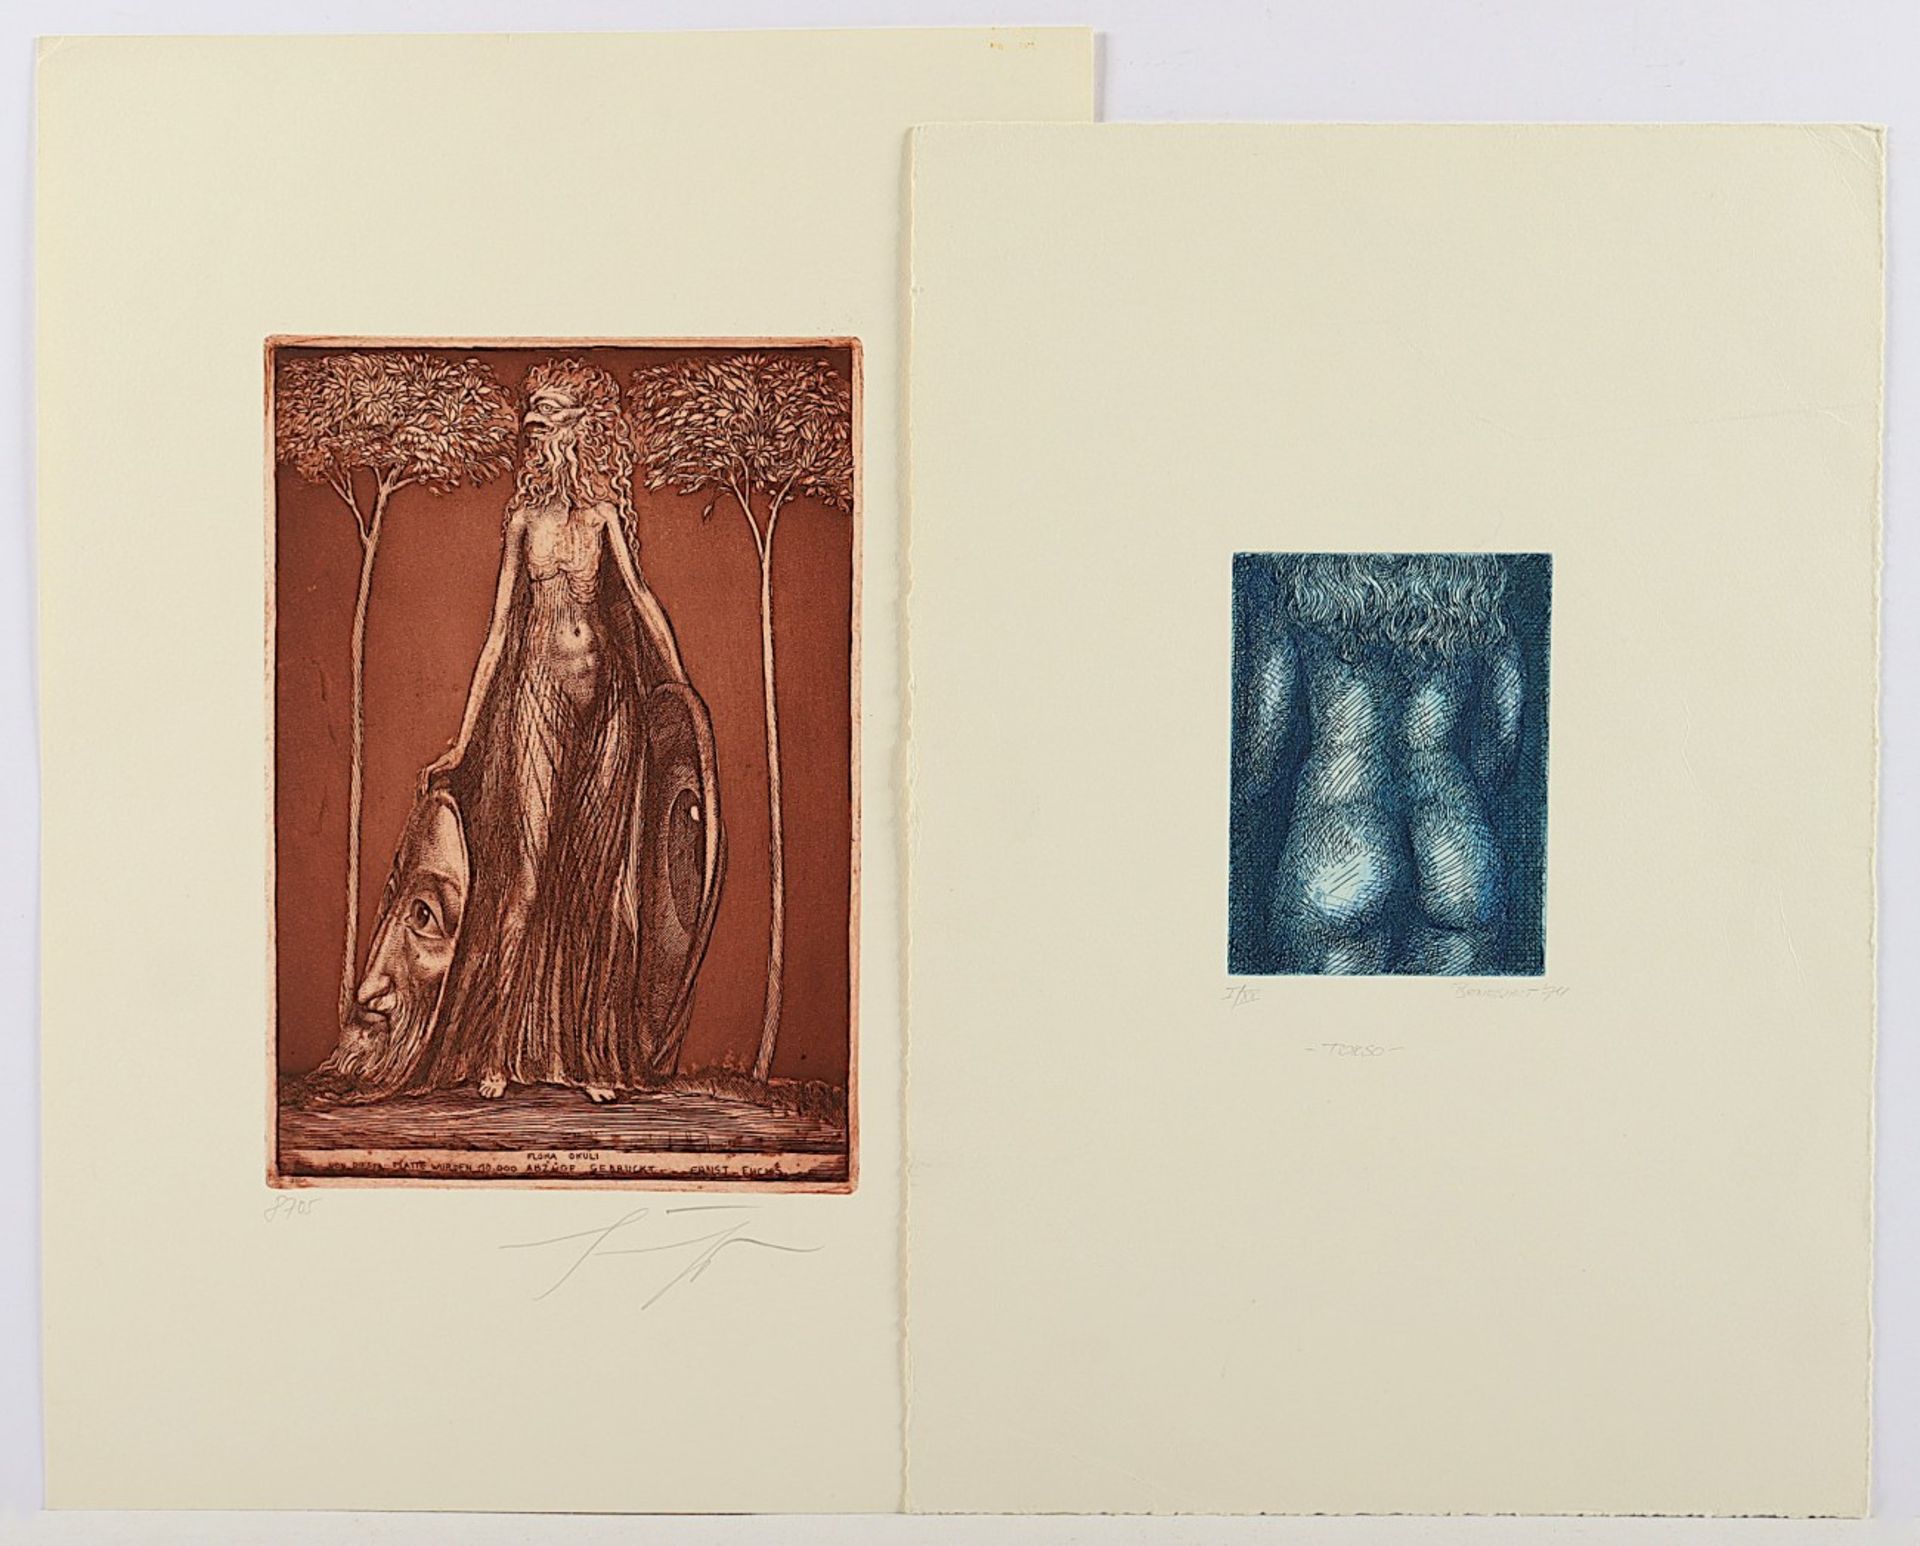 FUCHS, Ernst, "Flora okuli", Farbradierung, 24 x 17, handsigniert, beigegeben eine weitere Radierun - Bild 2 aus 2